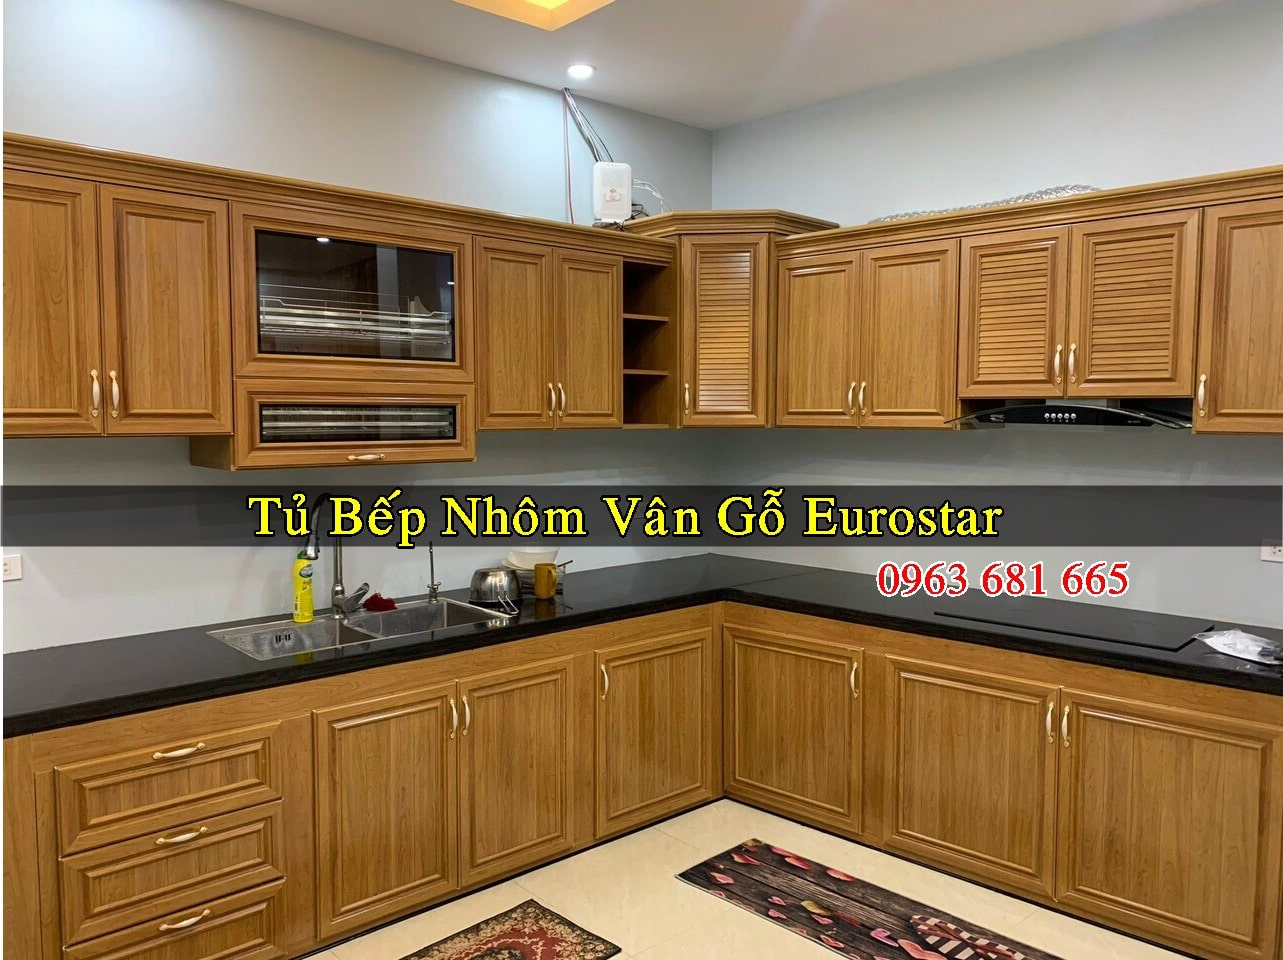 Báo Giá Mẫu Tủ Bếp Nhôm Vân Gỗ Eurostar Đẹp Cho Bạn